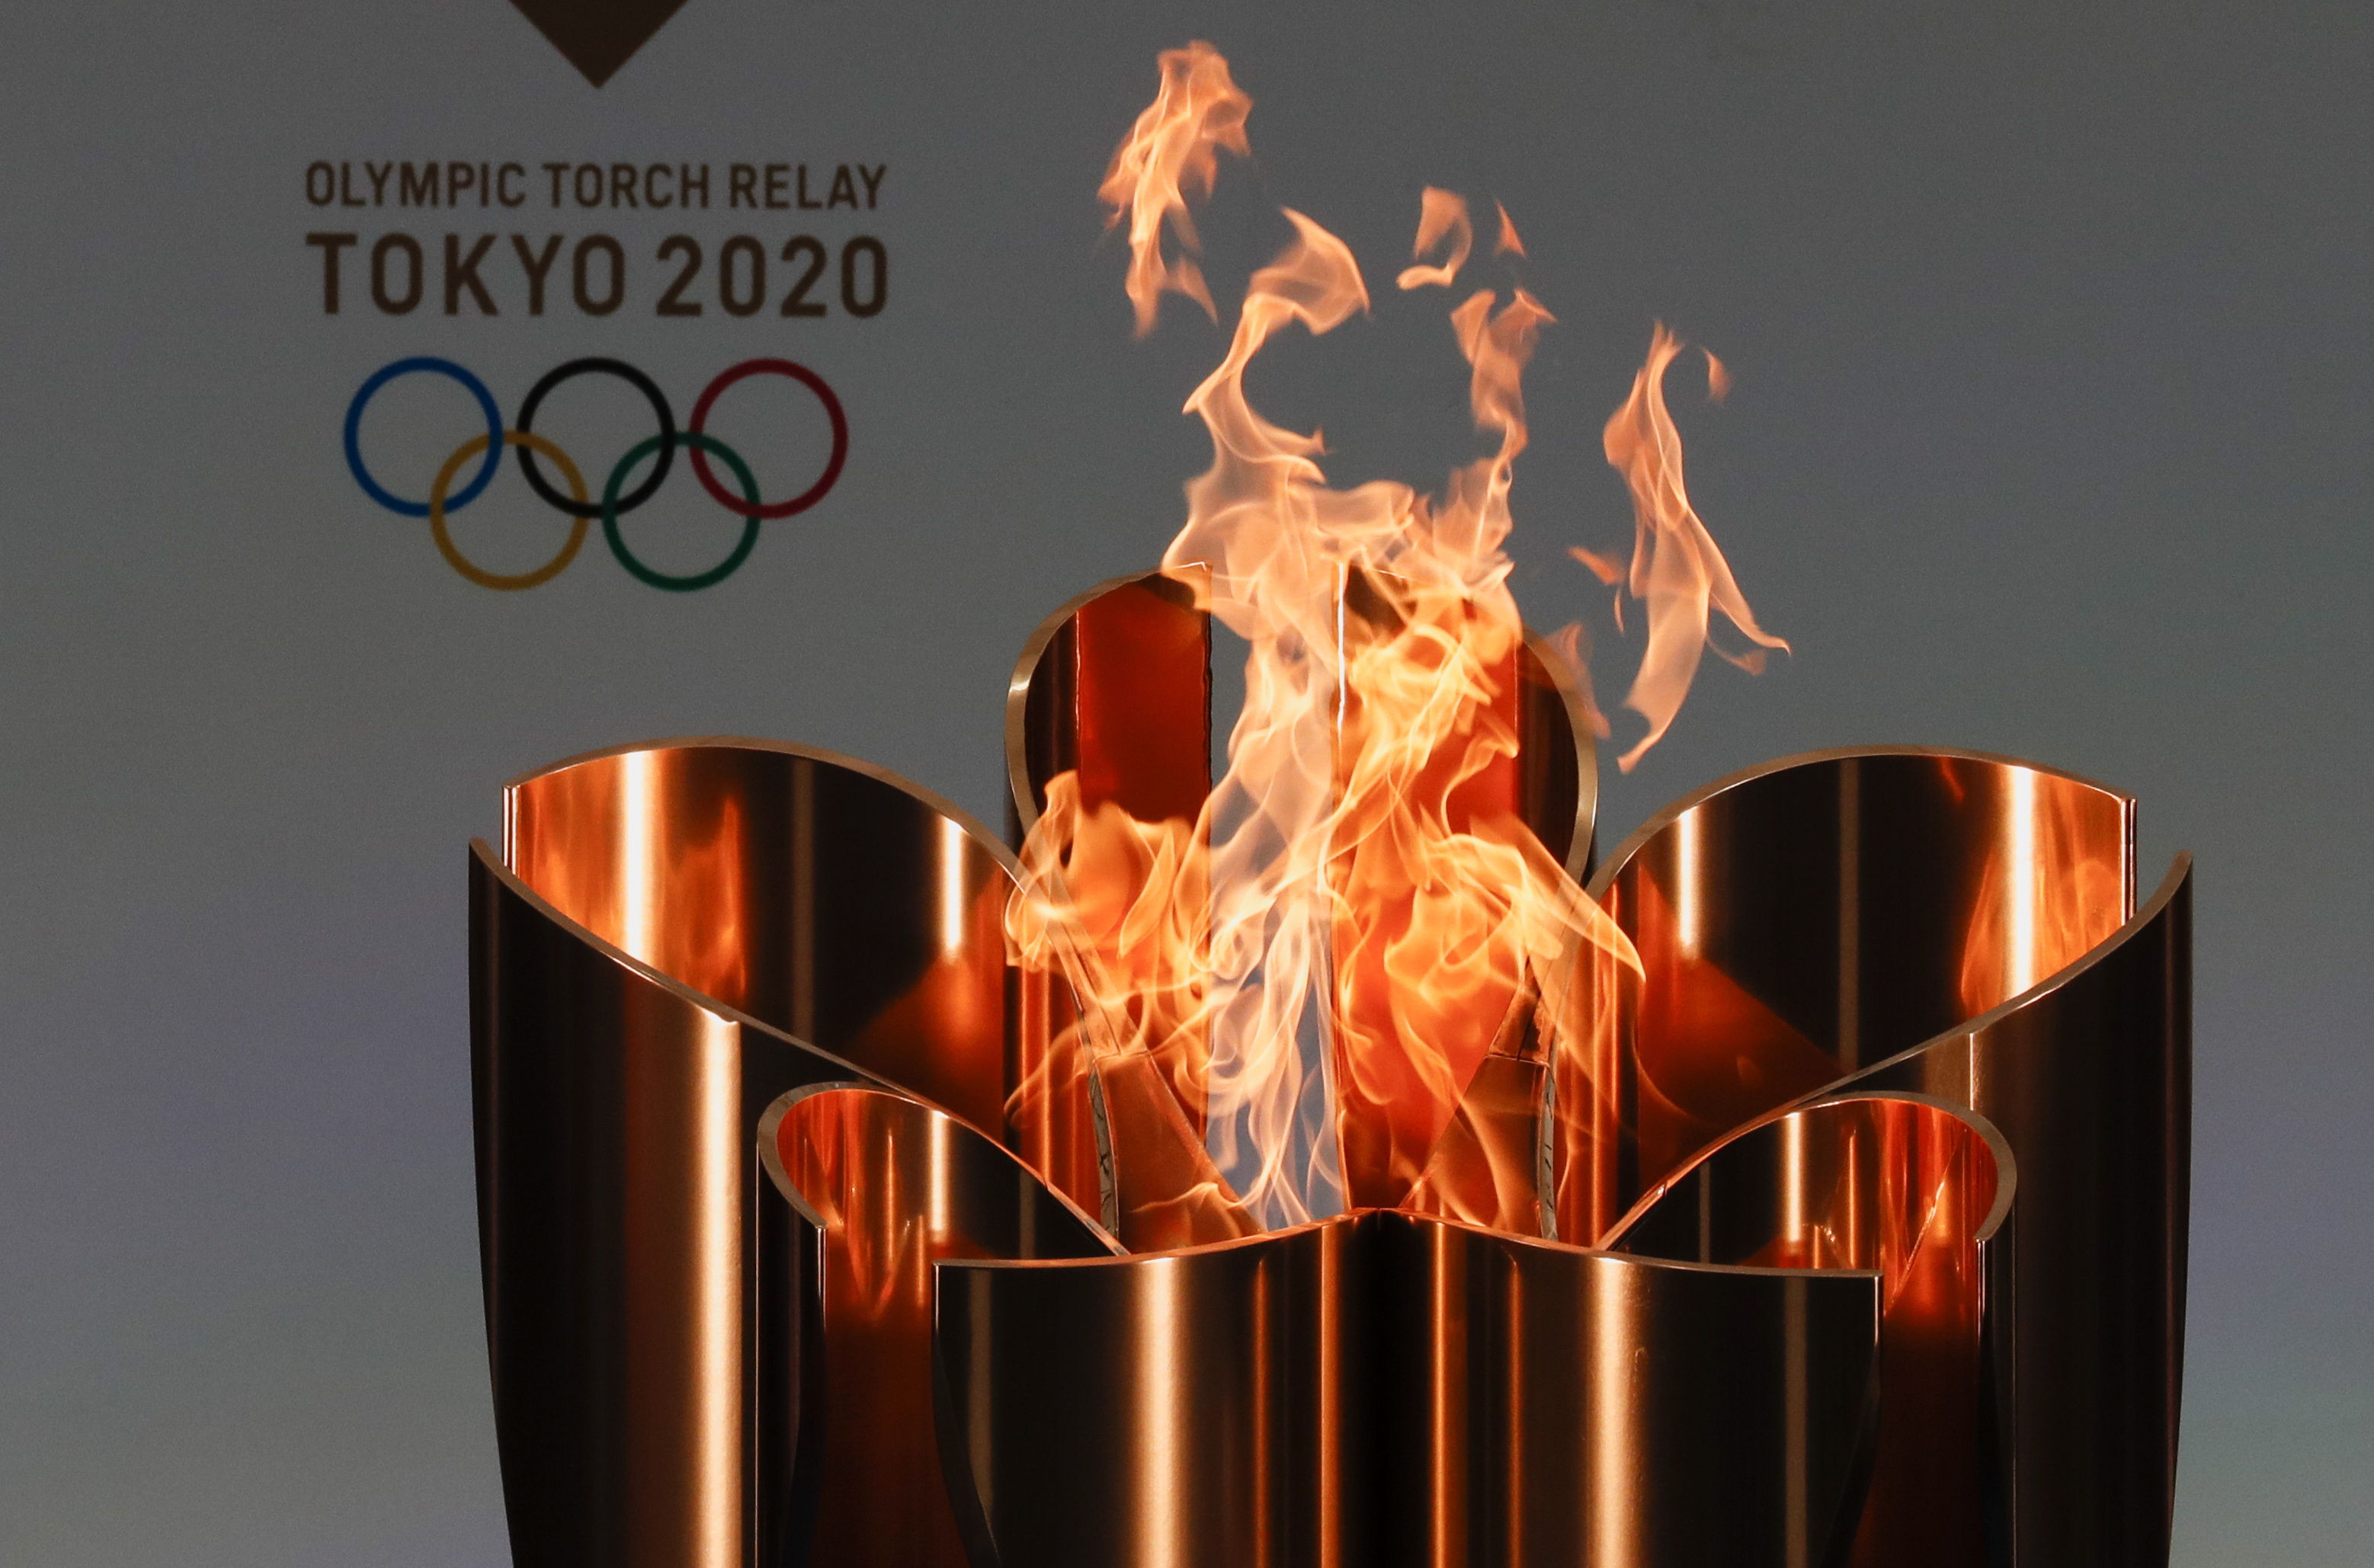 Los Juegos Olímpicos se llevarán a cabo en Tokio, Japón. Foto Prensa Libre: EFE.